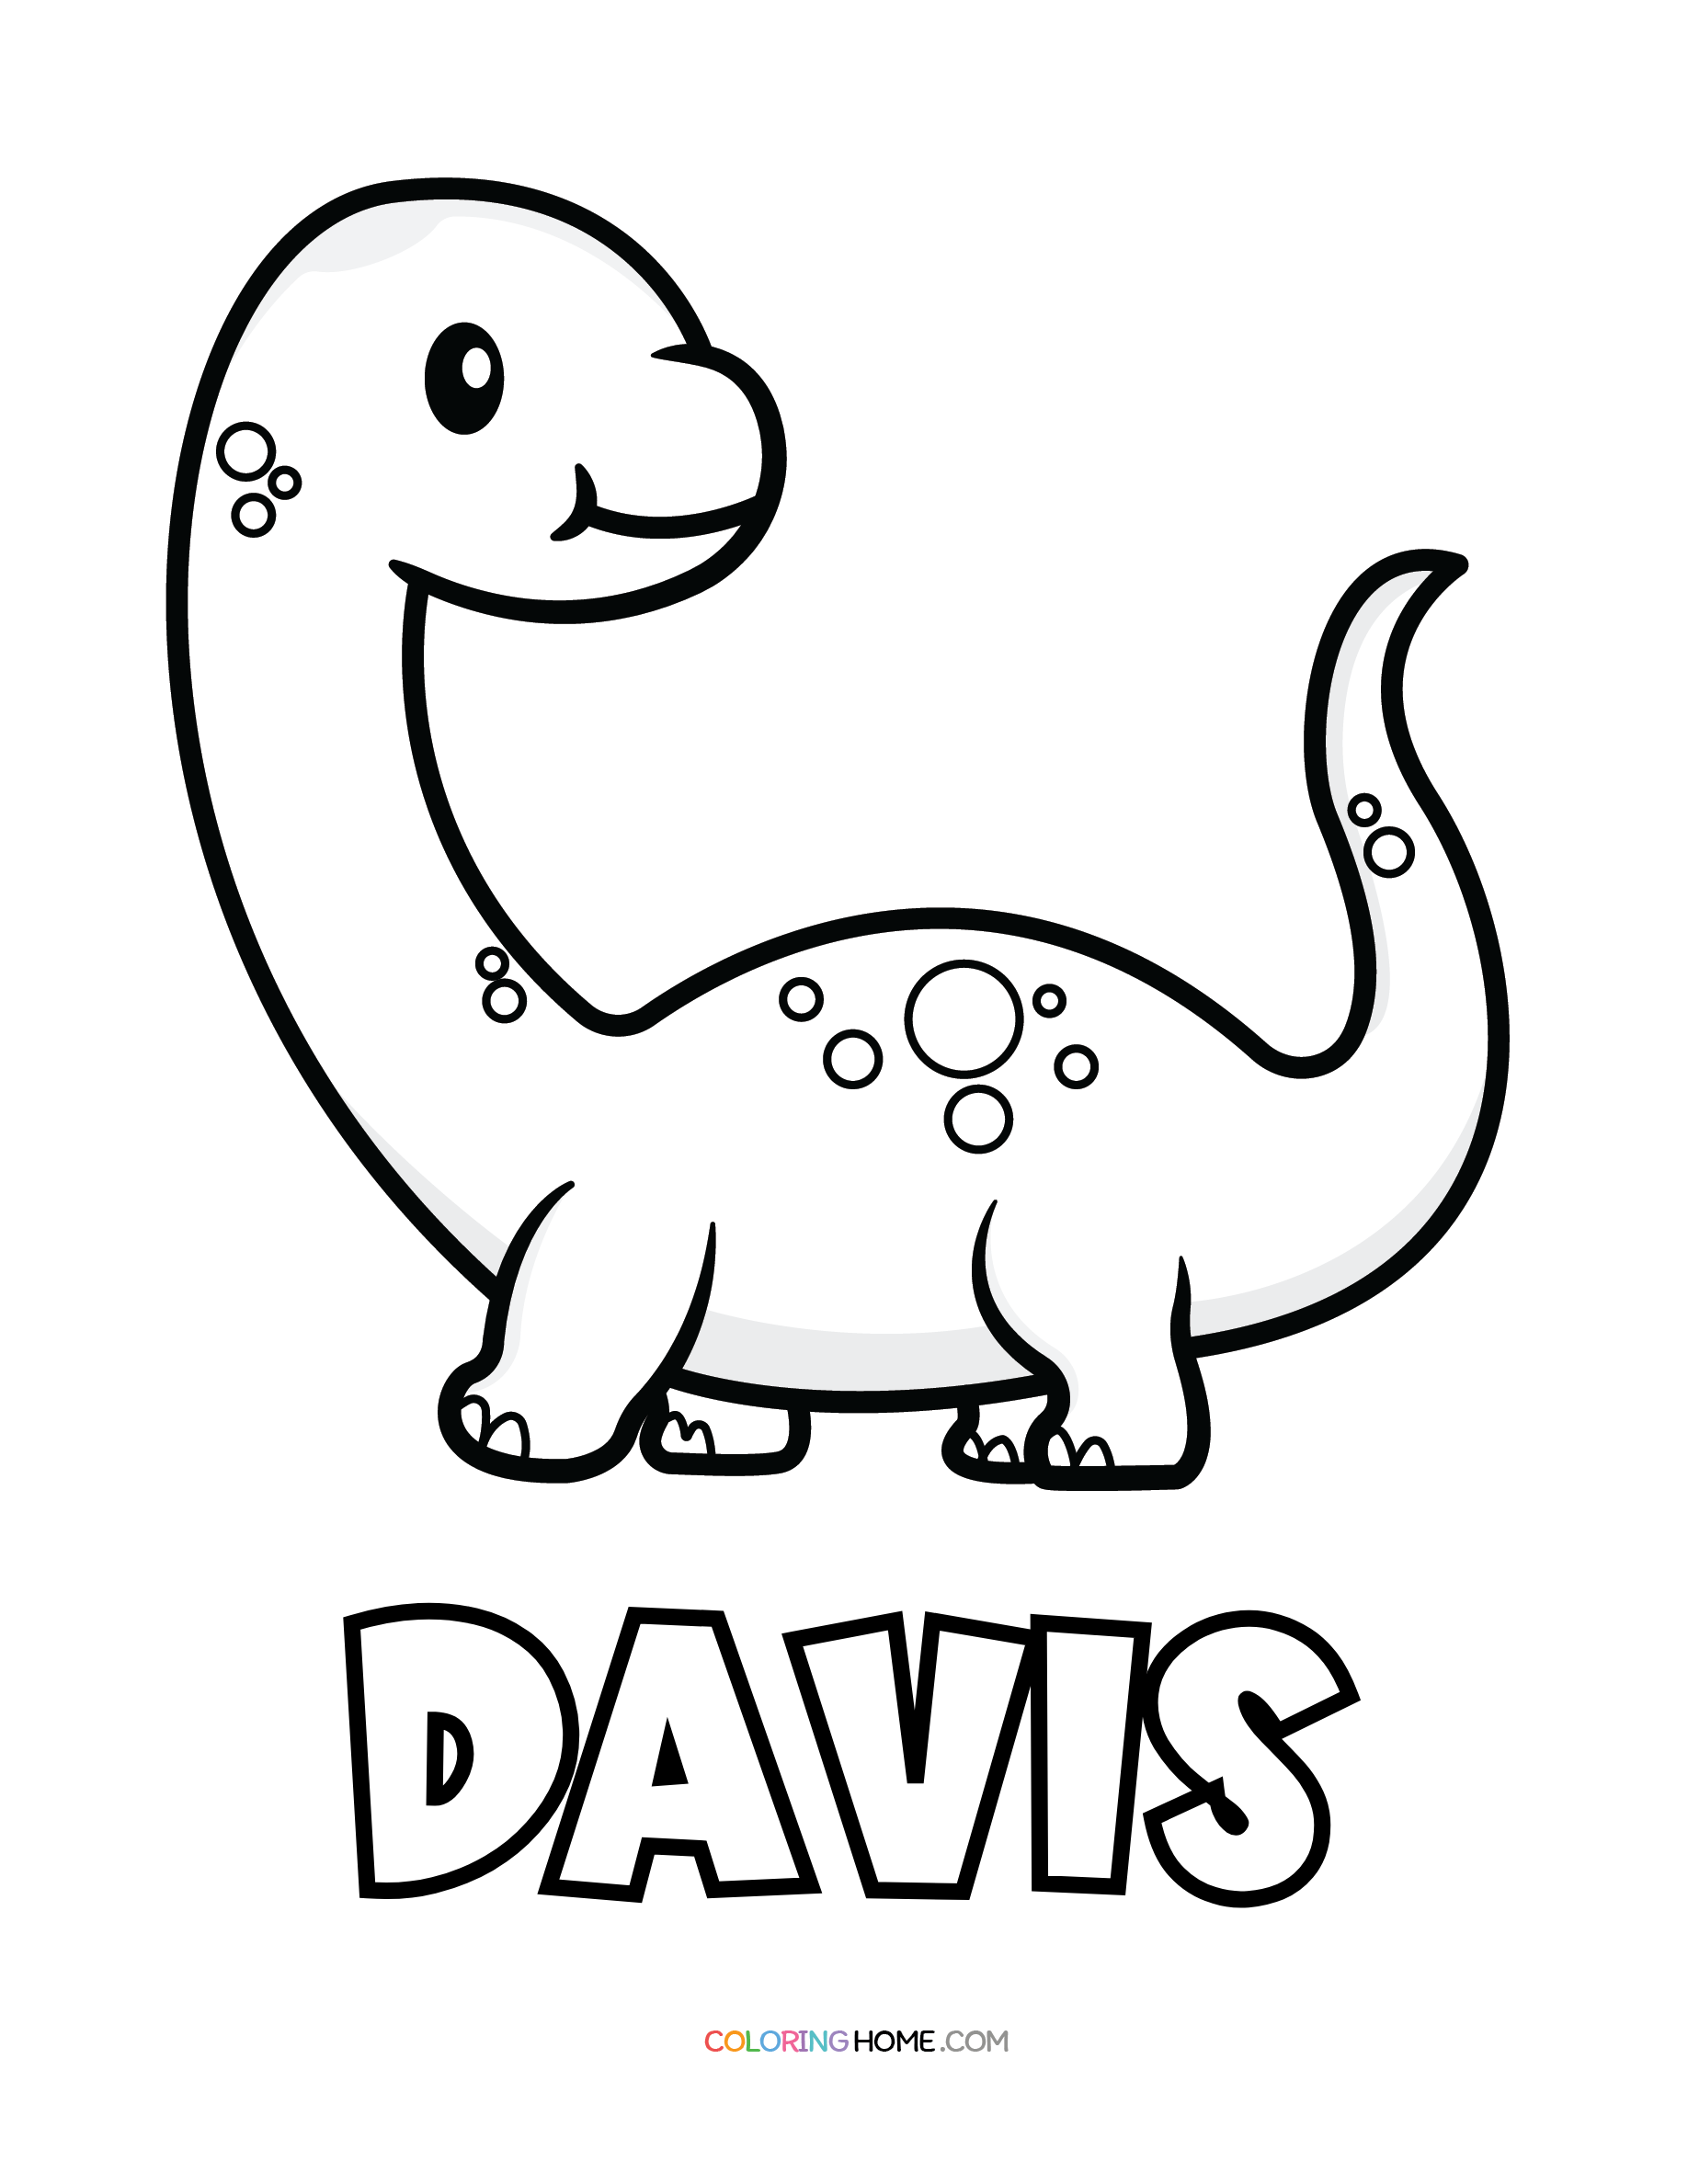 Davis dinosaur coloring page